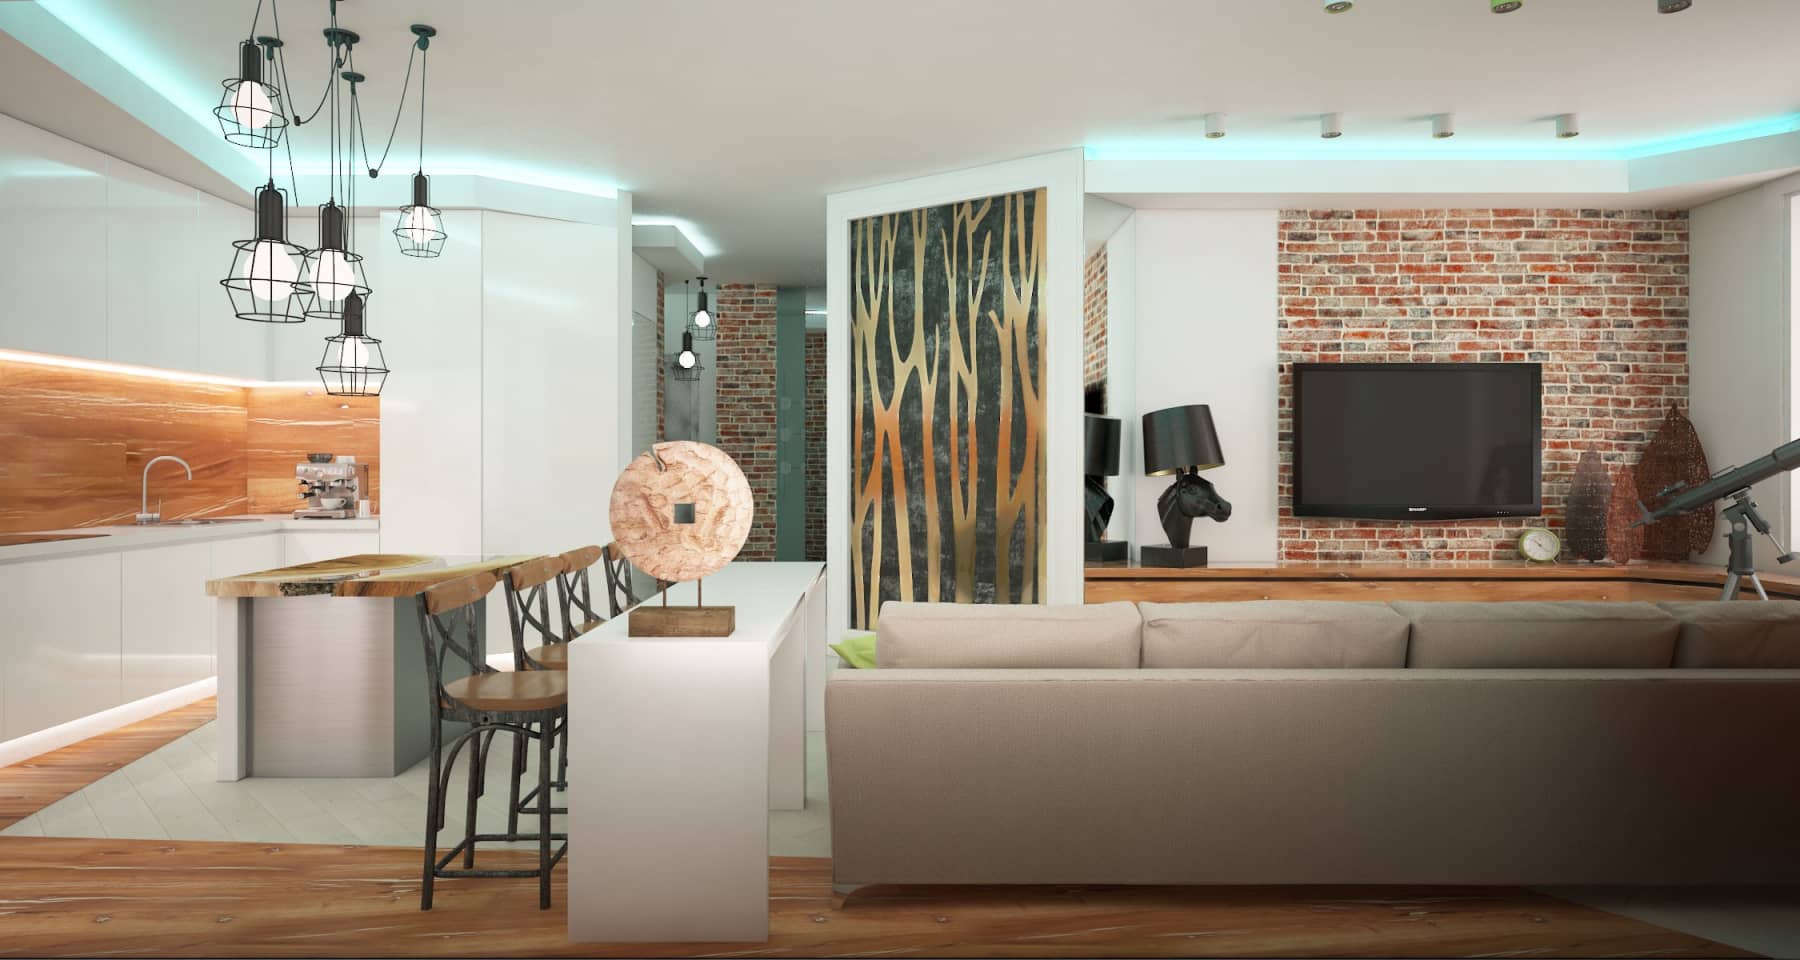 Современный дизайн 3 комнатной квартиры 2021